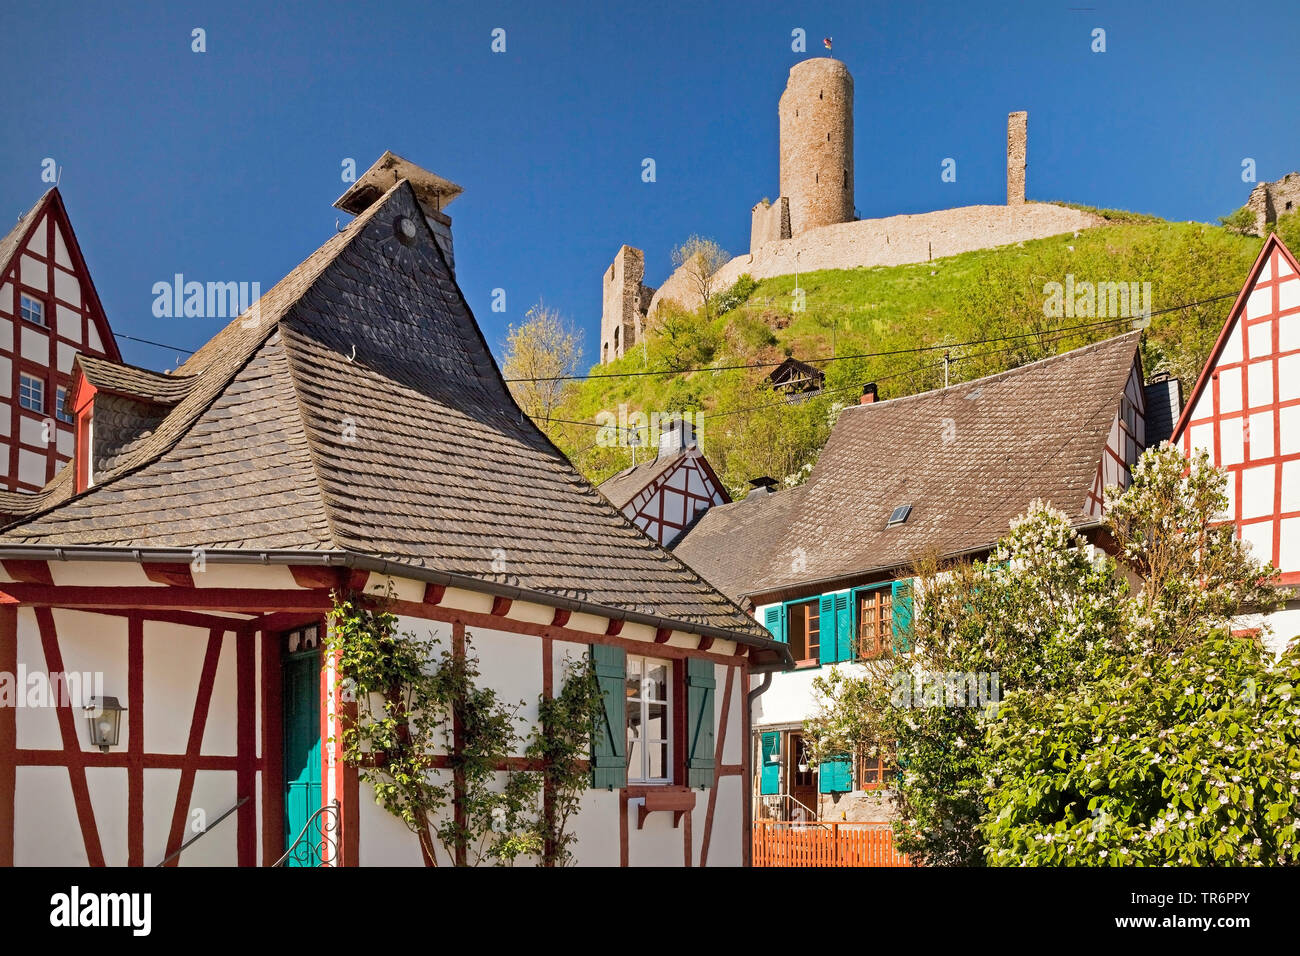 Casas de entramados en el centro histórico y el castillo de la ruina Lowenburg, Alemania, Renania-Palatinado, Eifel, Monreal Foto de stock